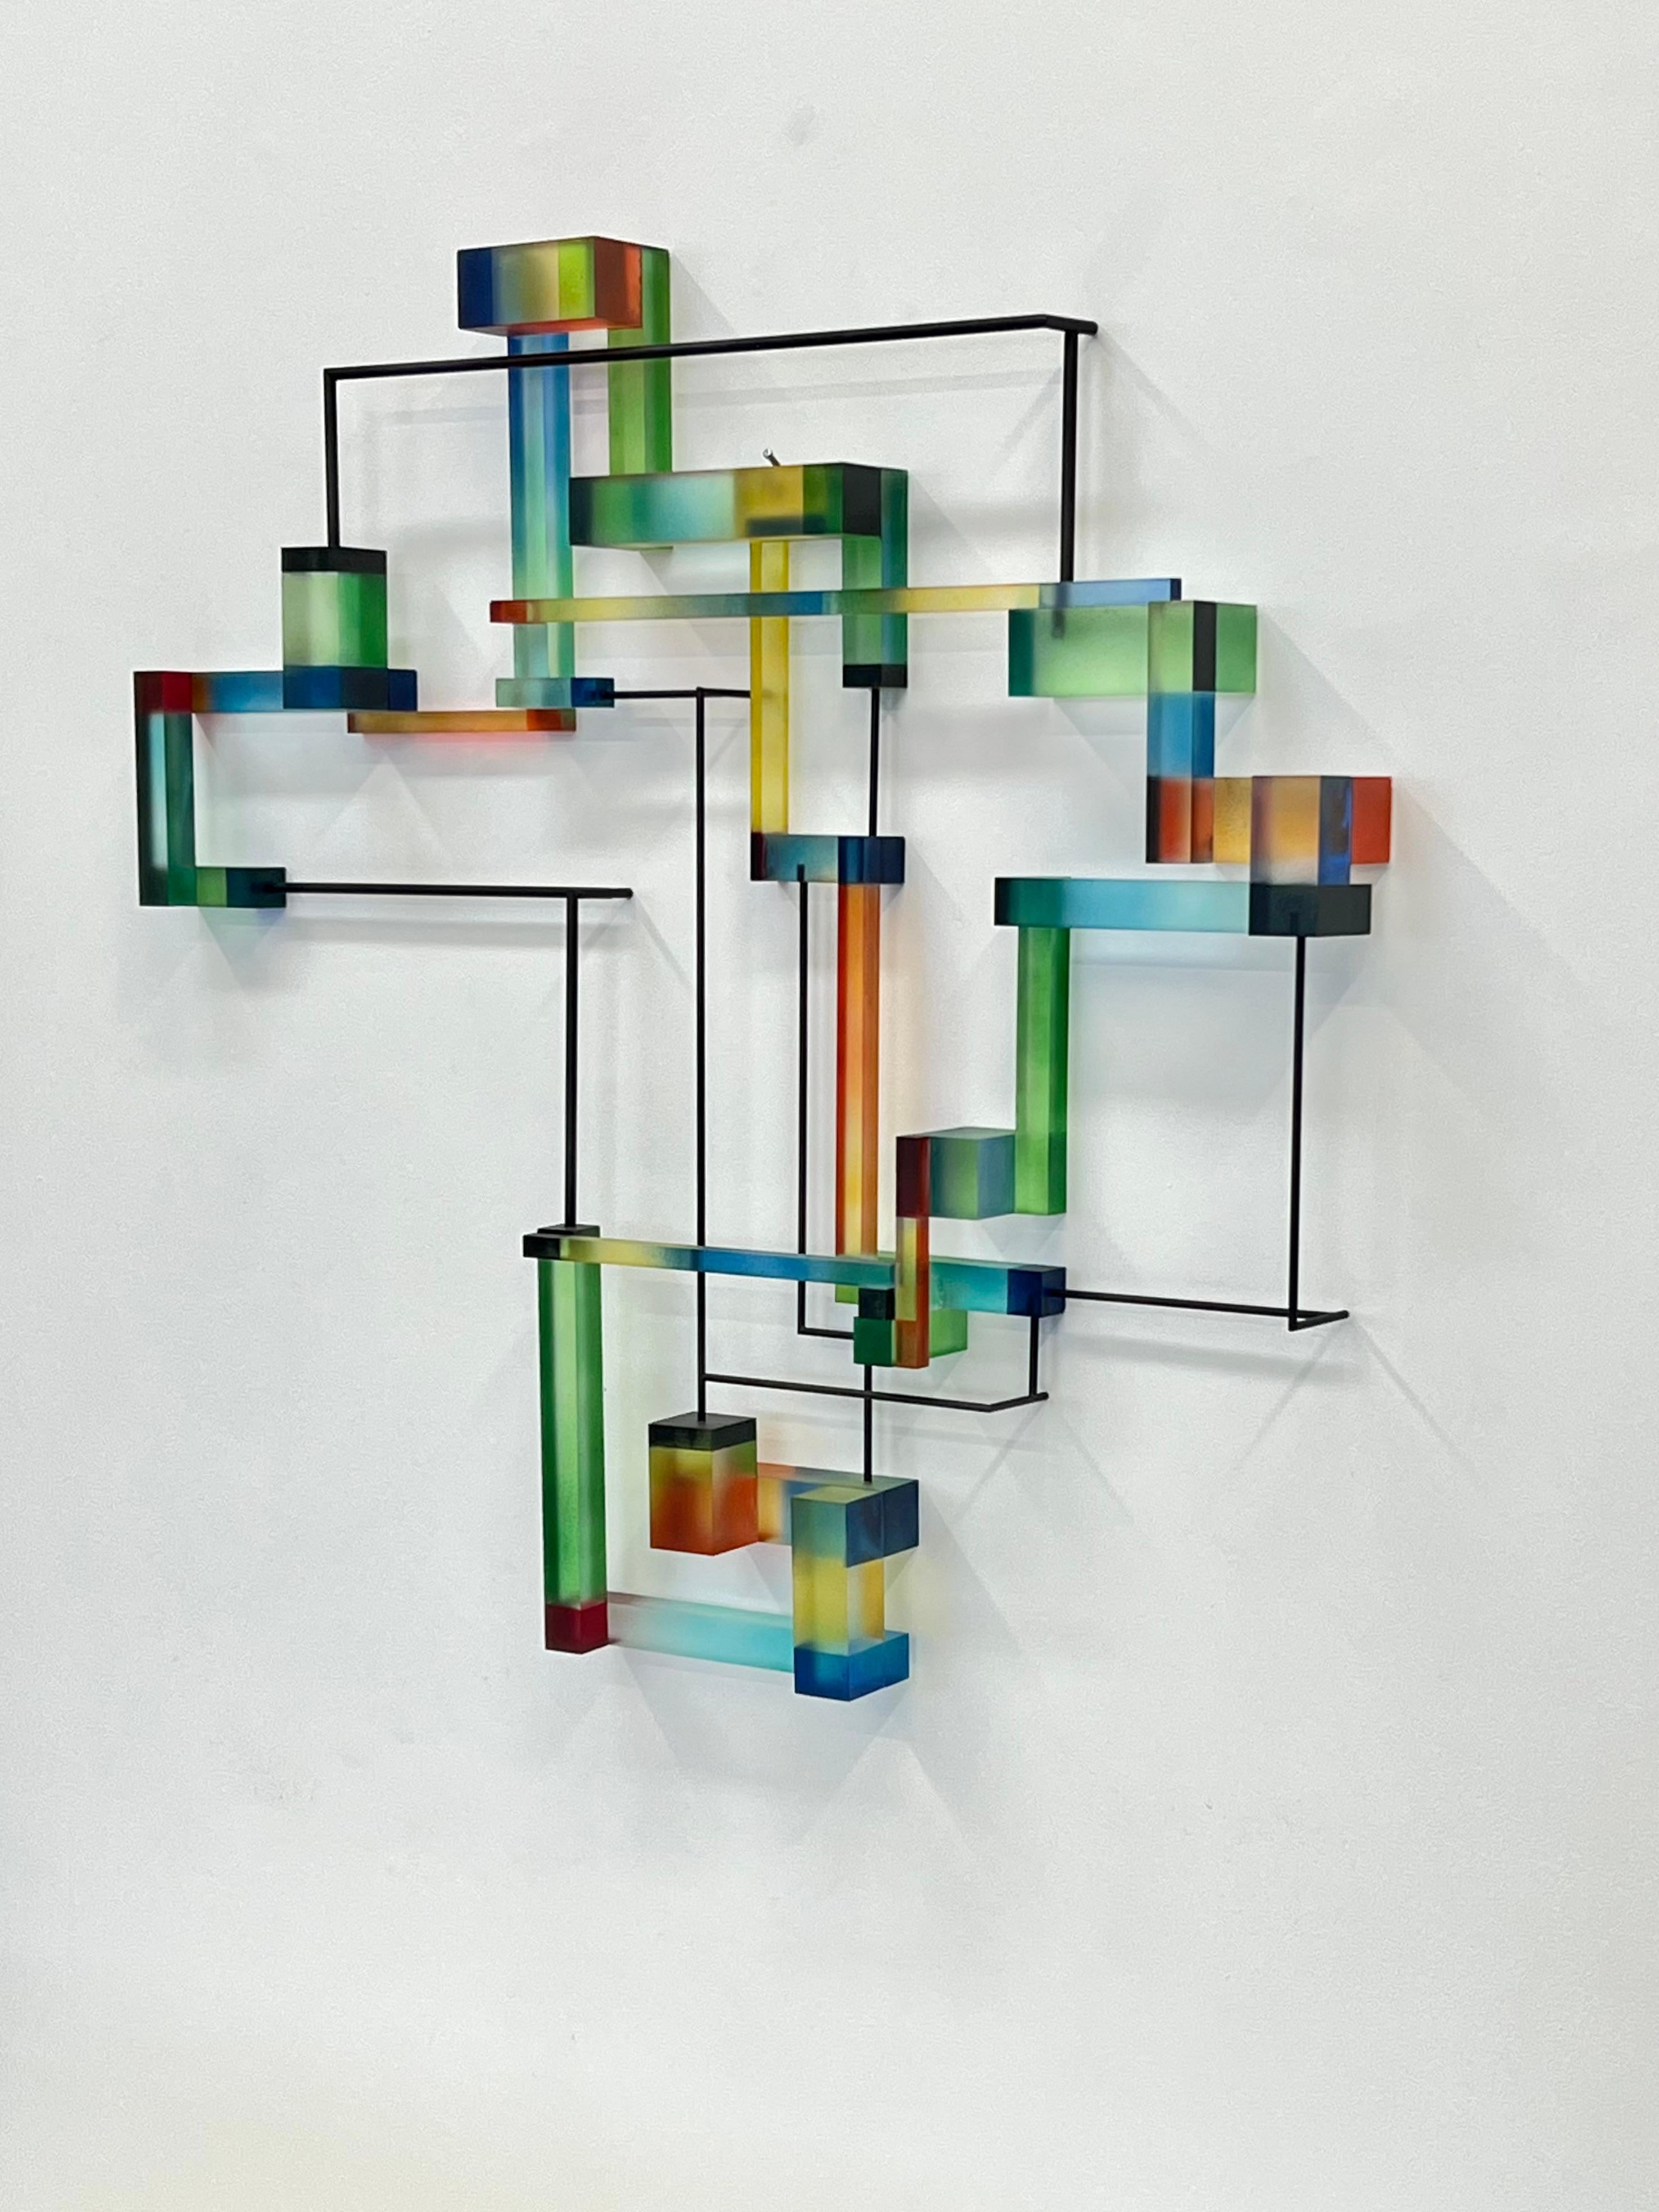 Henri's Derain : contemporary modern abstract geometric sculpture - Sculpture by Greg Chann